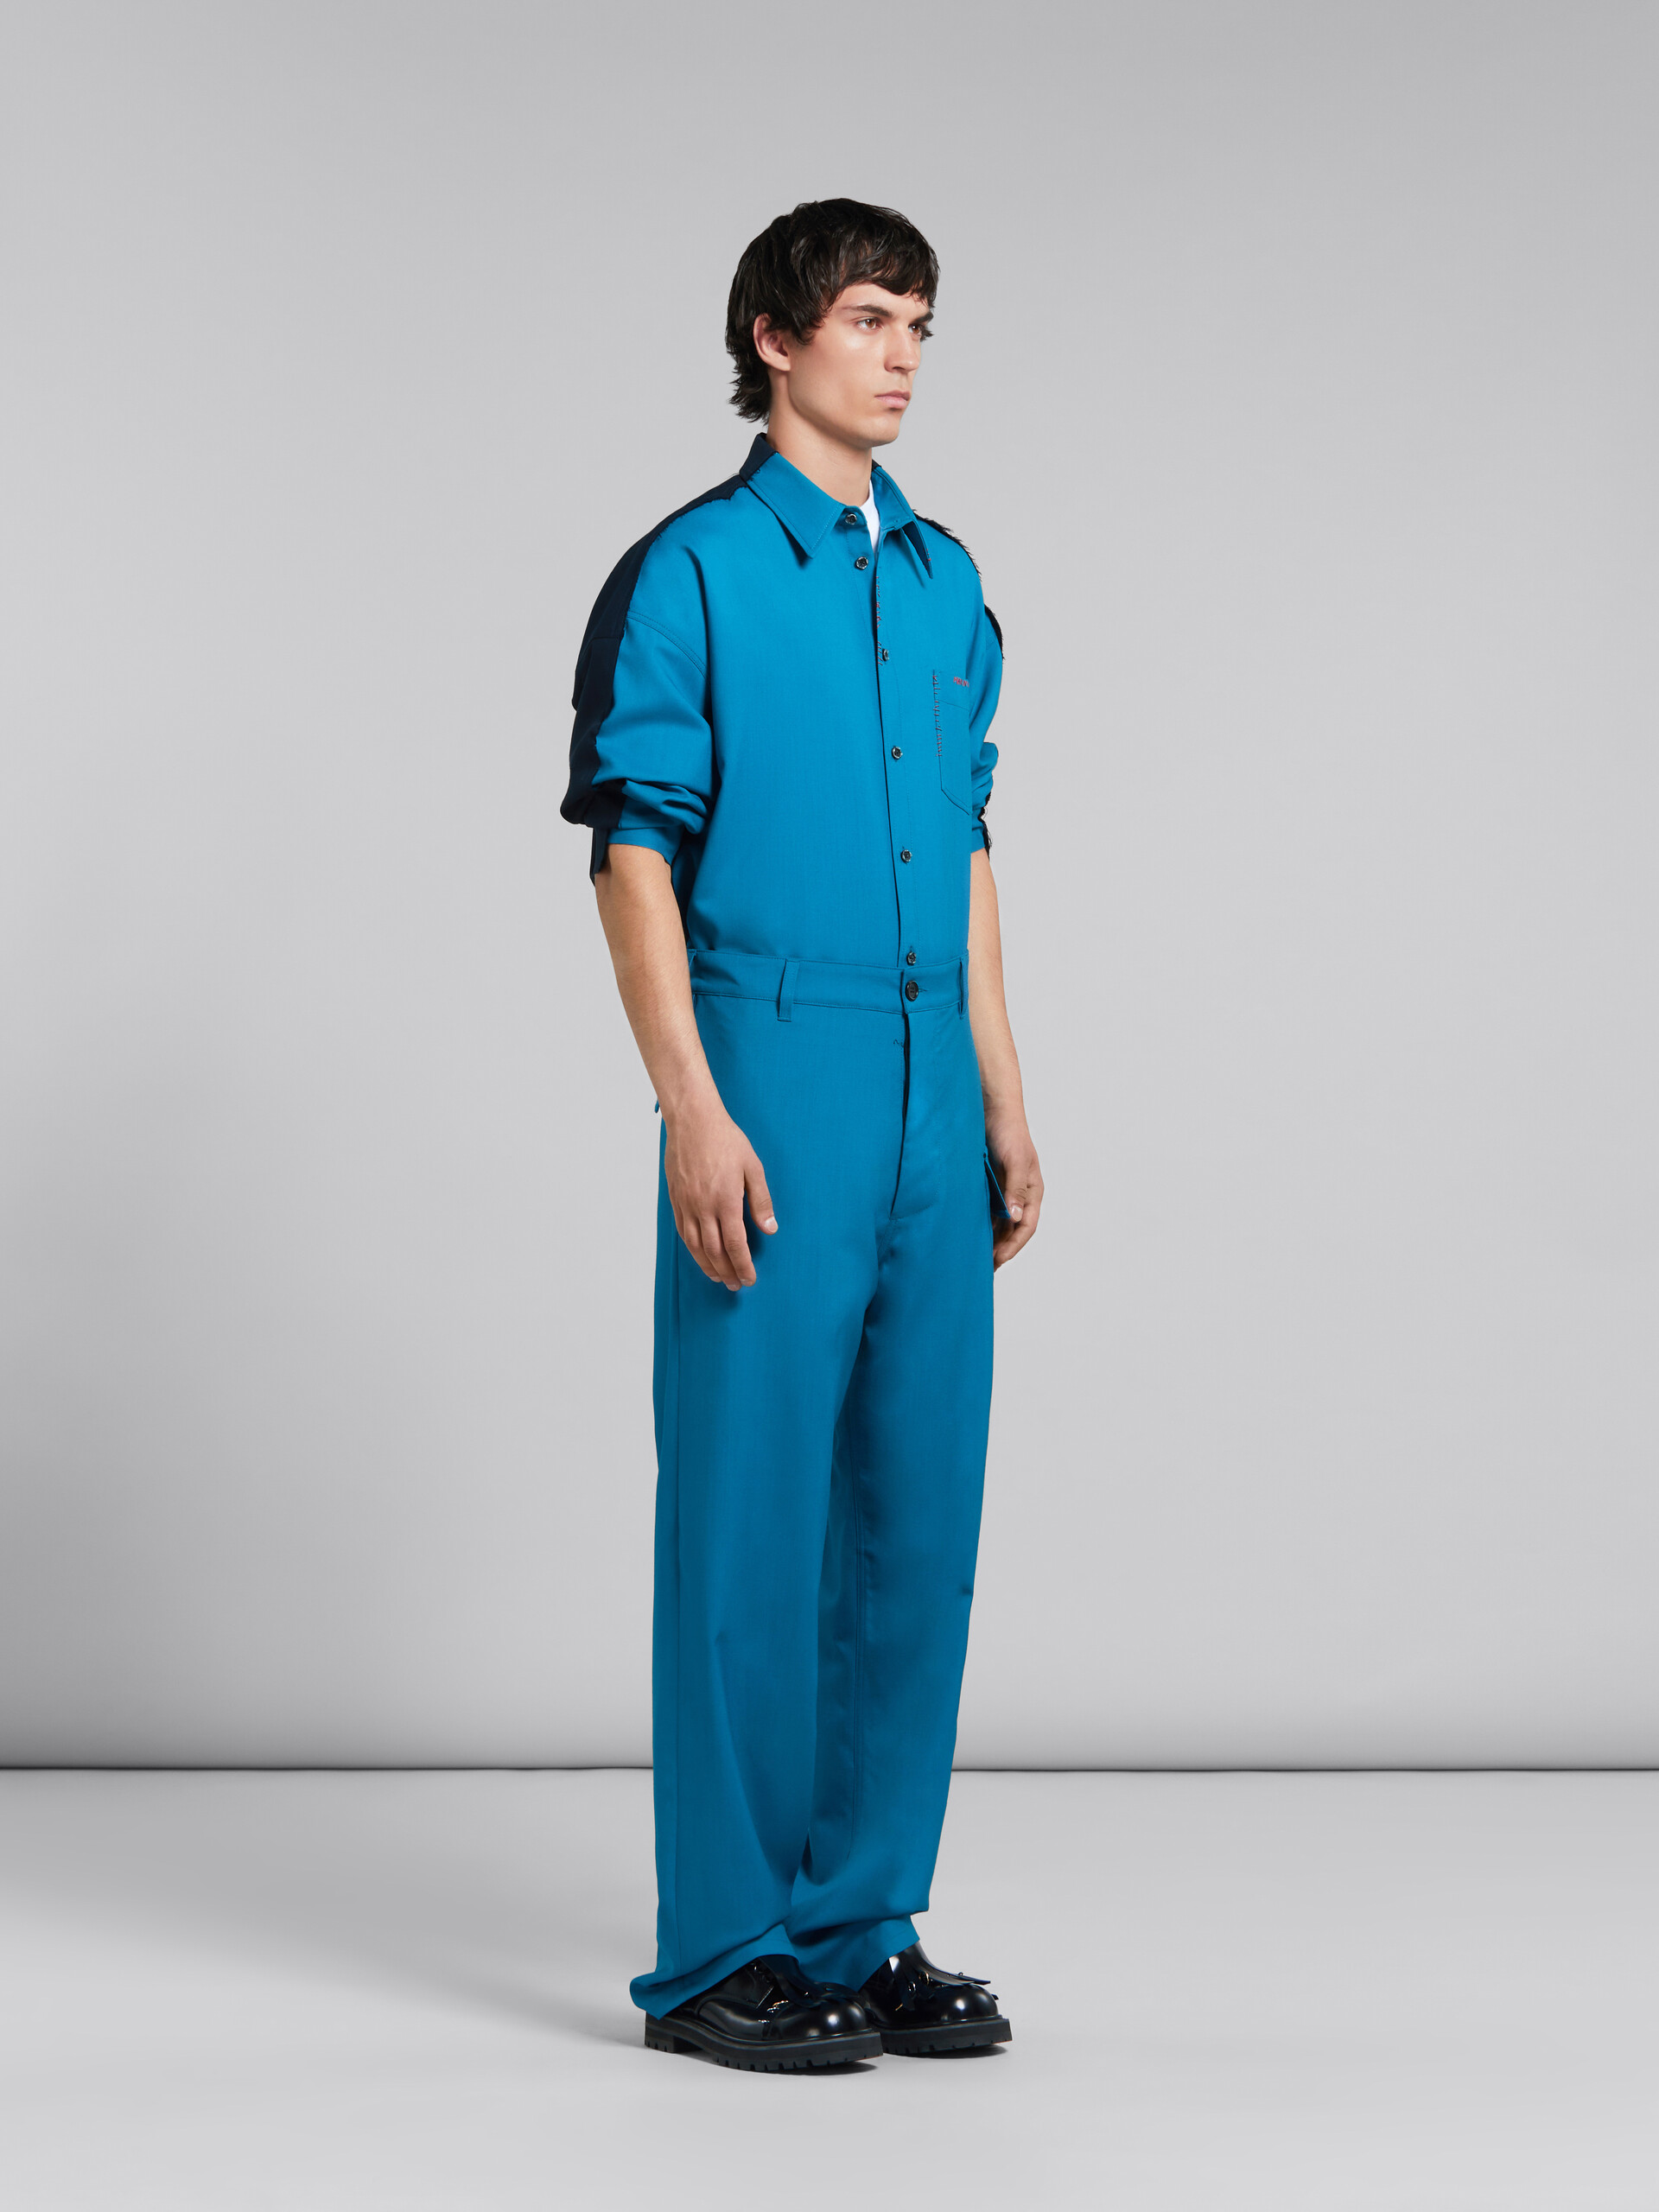 Pantalón de lana tropical verde azulado con bolsillo funcional - Pantalones - Image 5